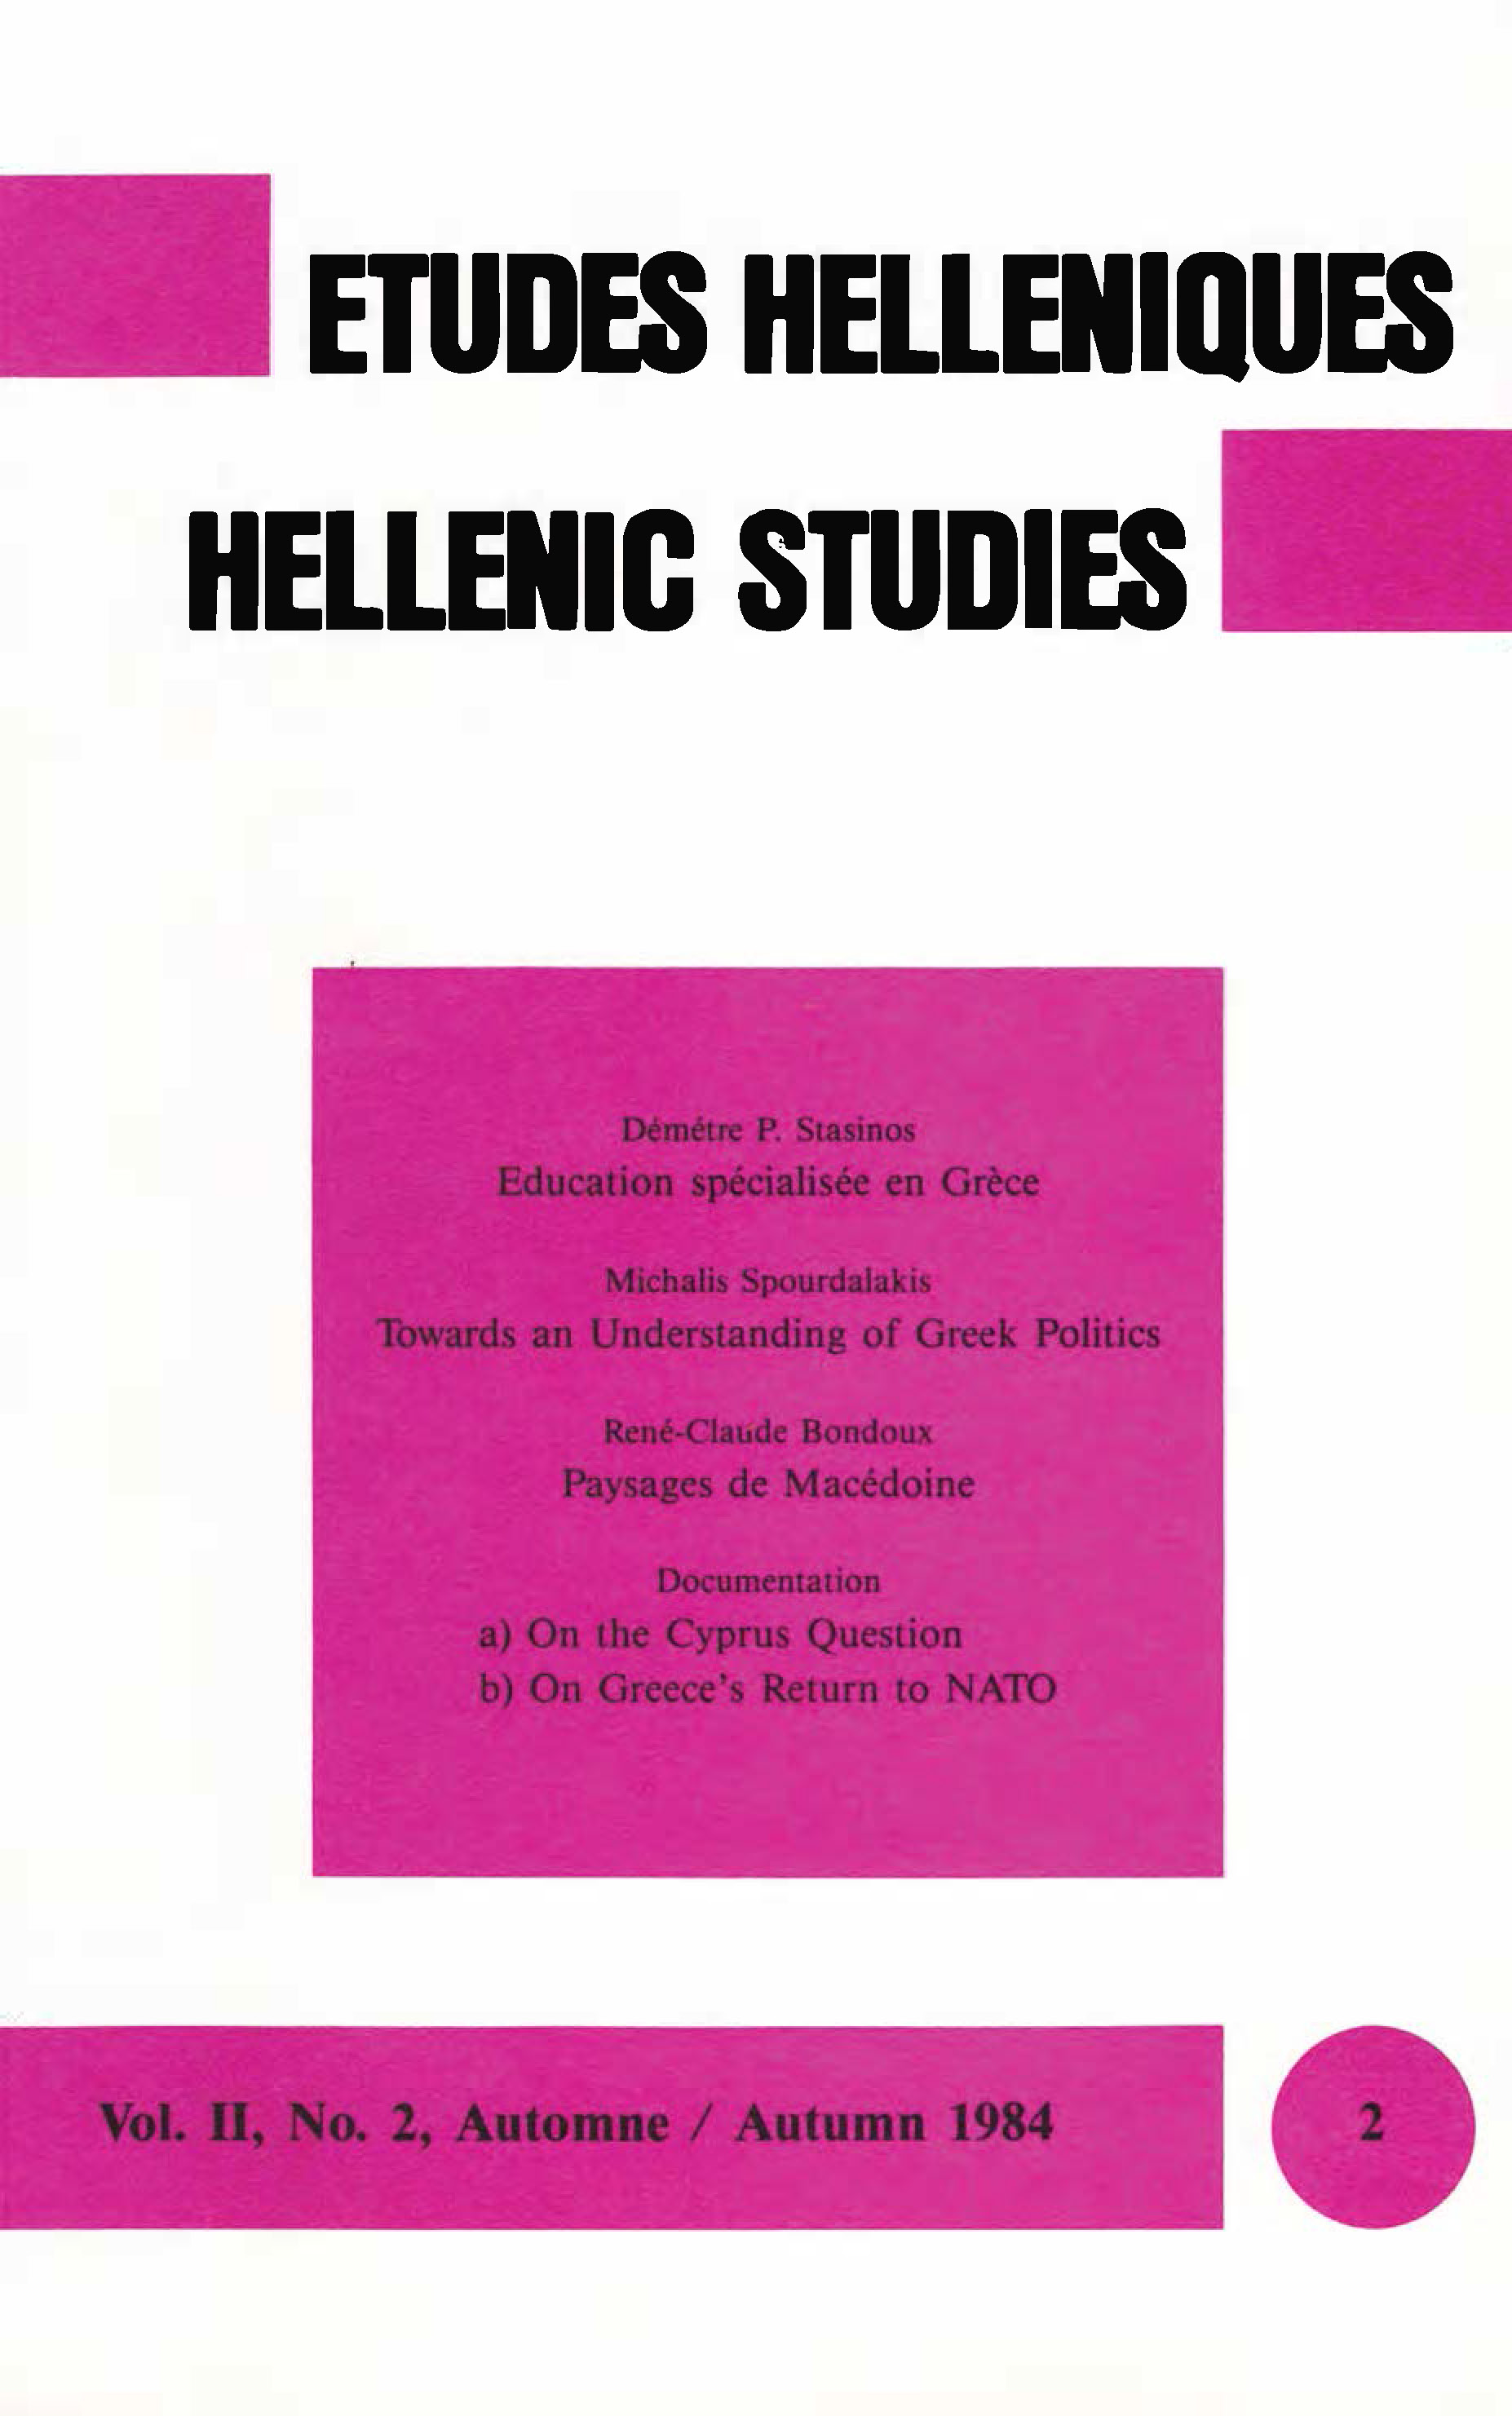 Études helléniques / Hellenic Studies, Volume 2, No 2, 1984, cover